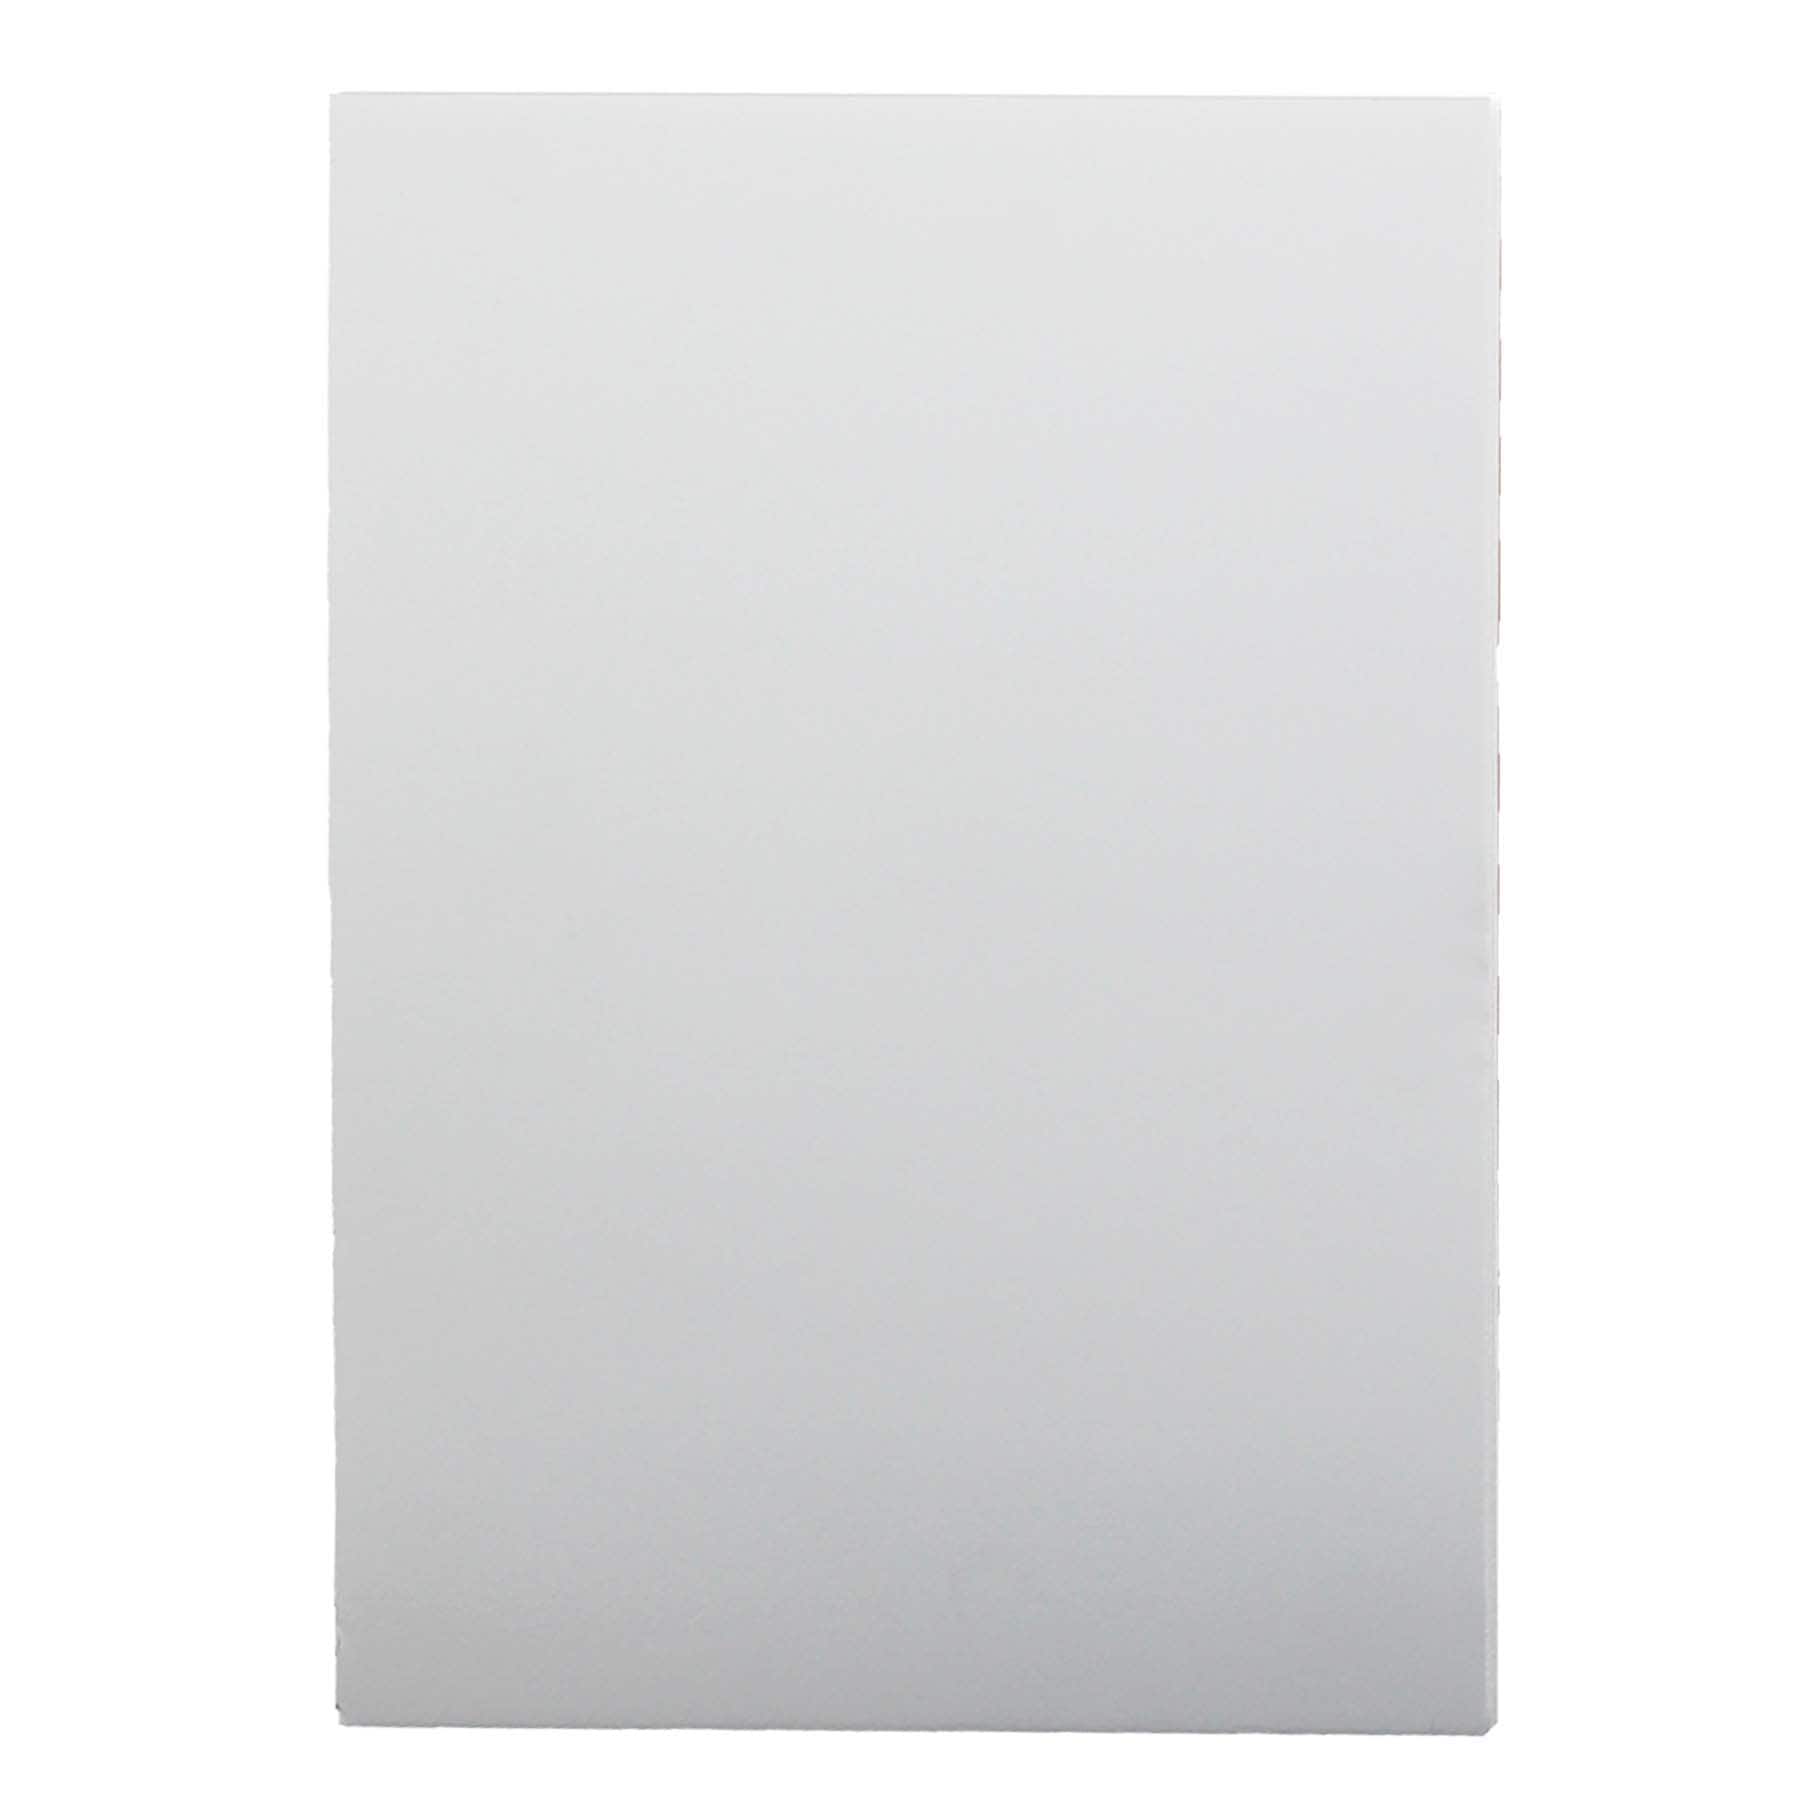 Flipside Foam Board, White, 20 In x 30 In, Pack of 10 at